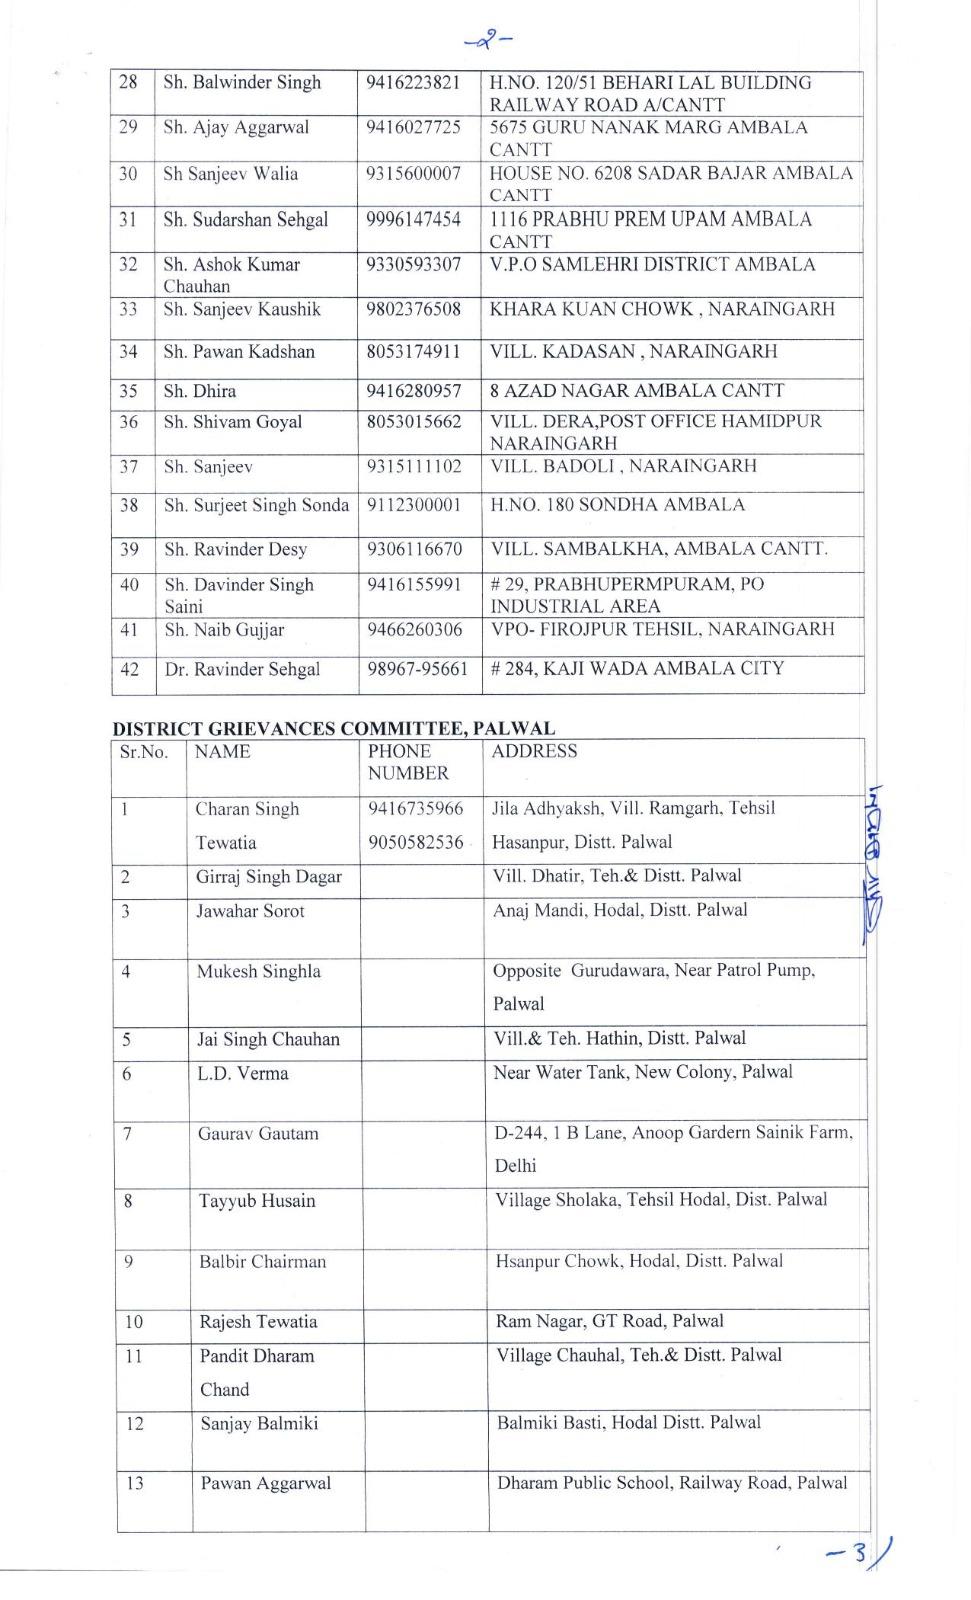 हरियाणा सरकार की तरफ से अंबाला और पलवल जिला में ग्रीवेंस कमेटी के सदस्यों के अहम नियुक्तियां की गई है।